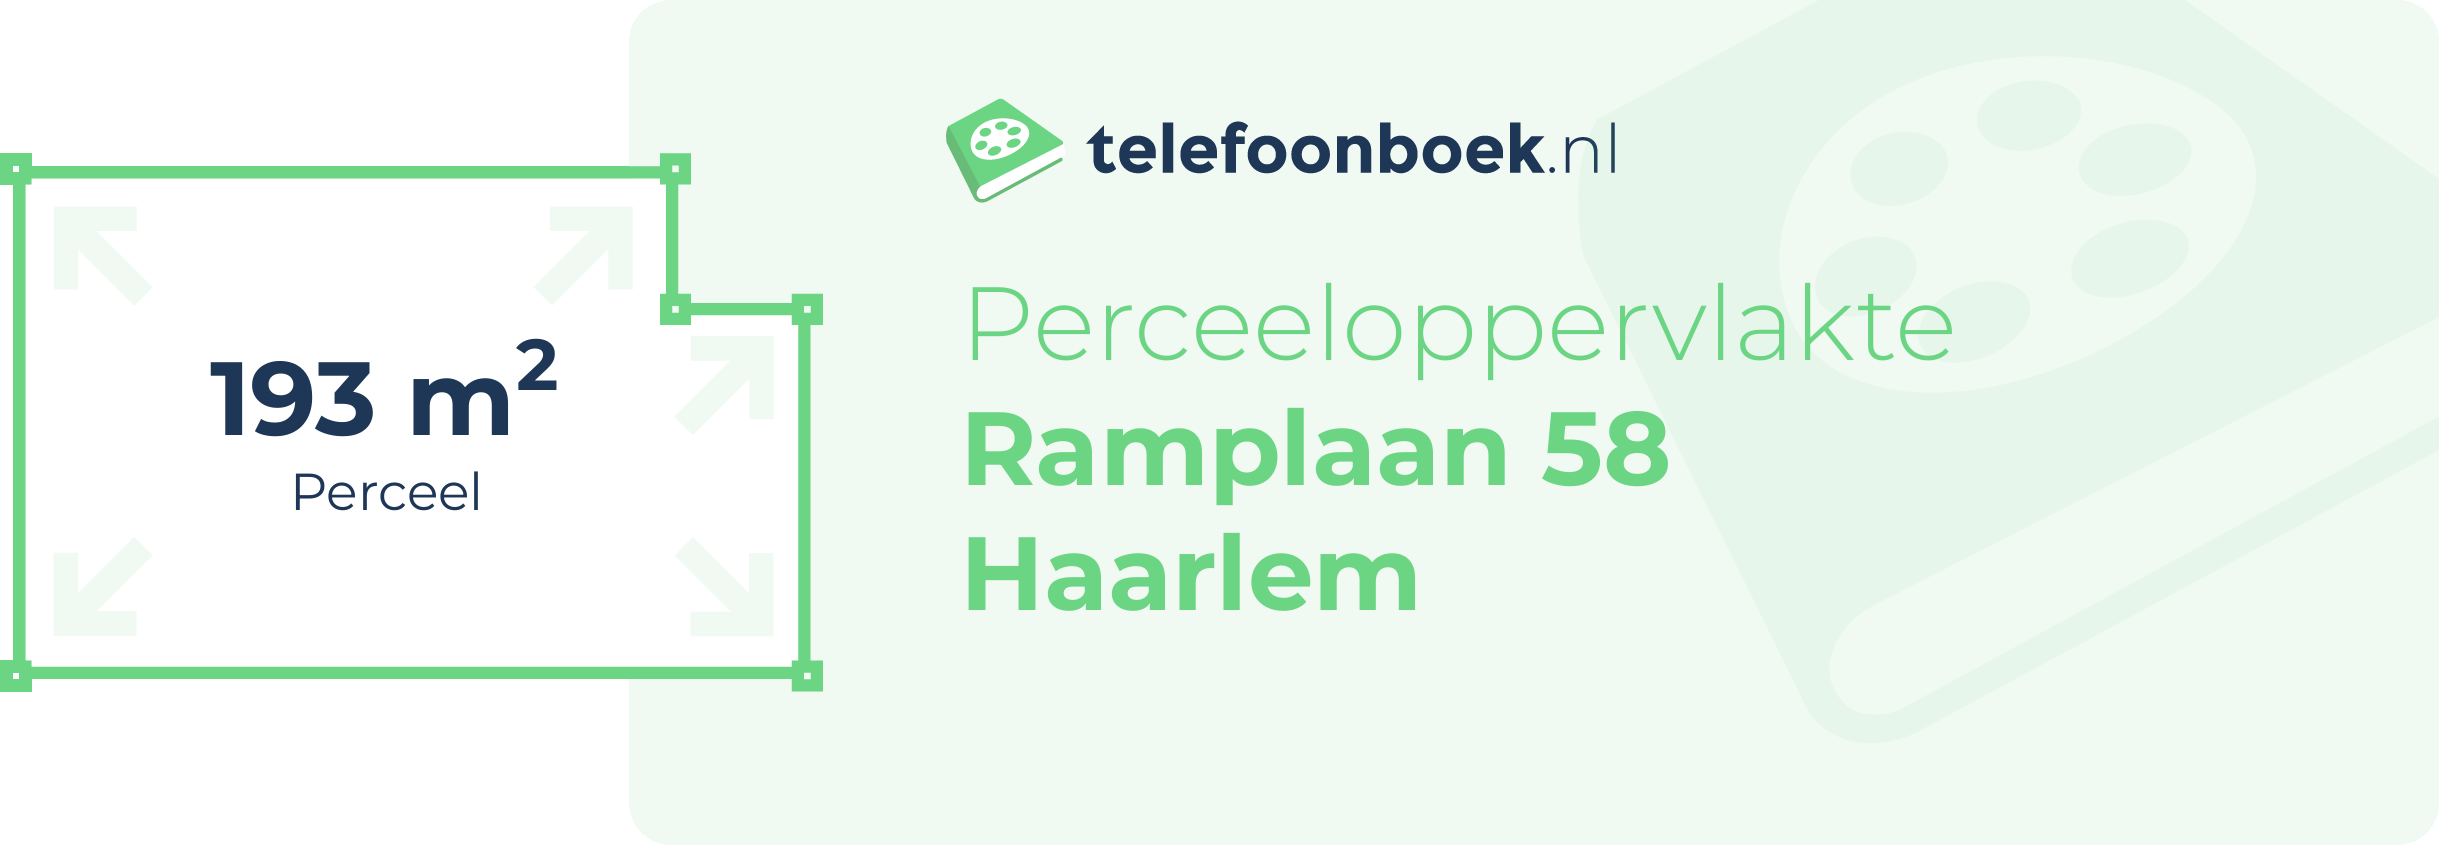 Perceeloppervlakte Ramplaan 58 Haarlem